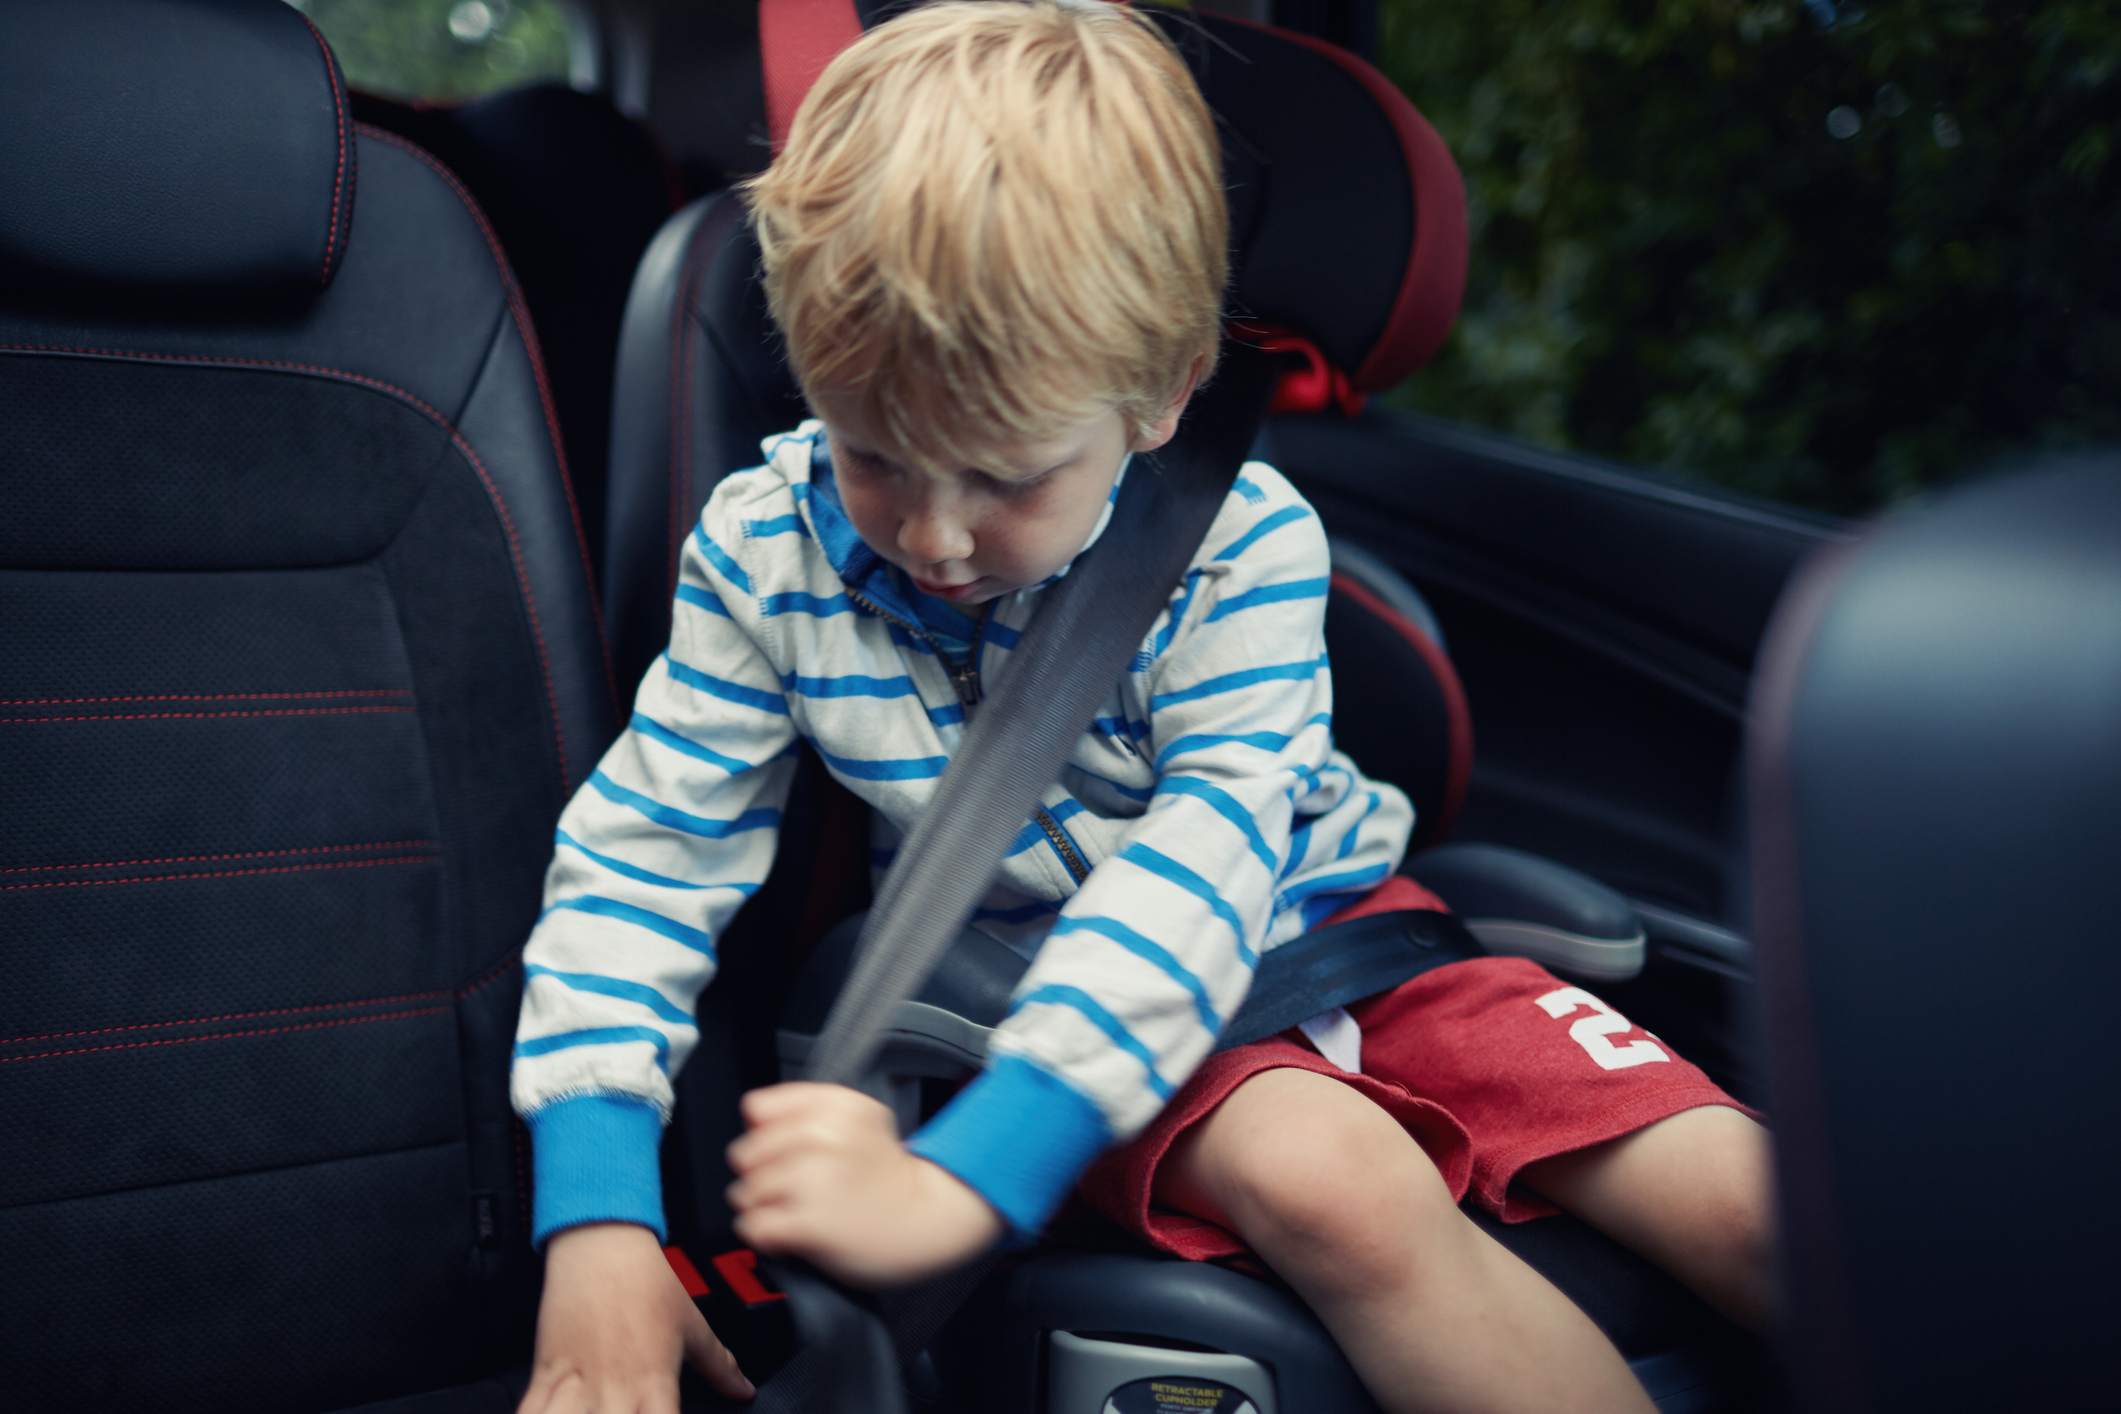 Installer un siège auto avec ceinture de sécurité - Aubert Conseils